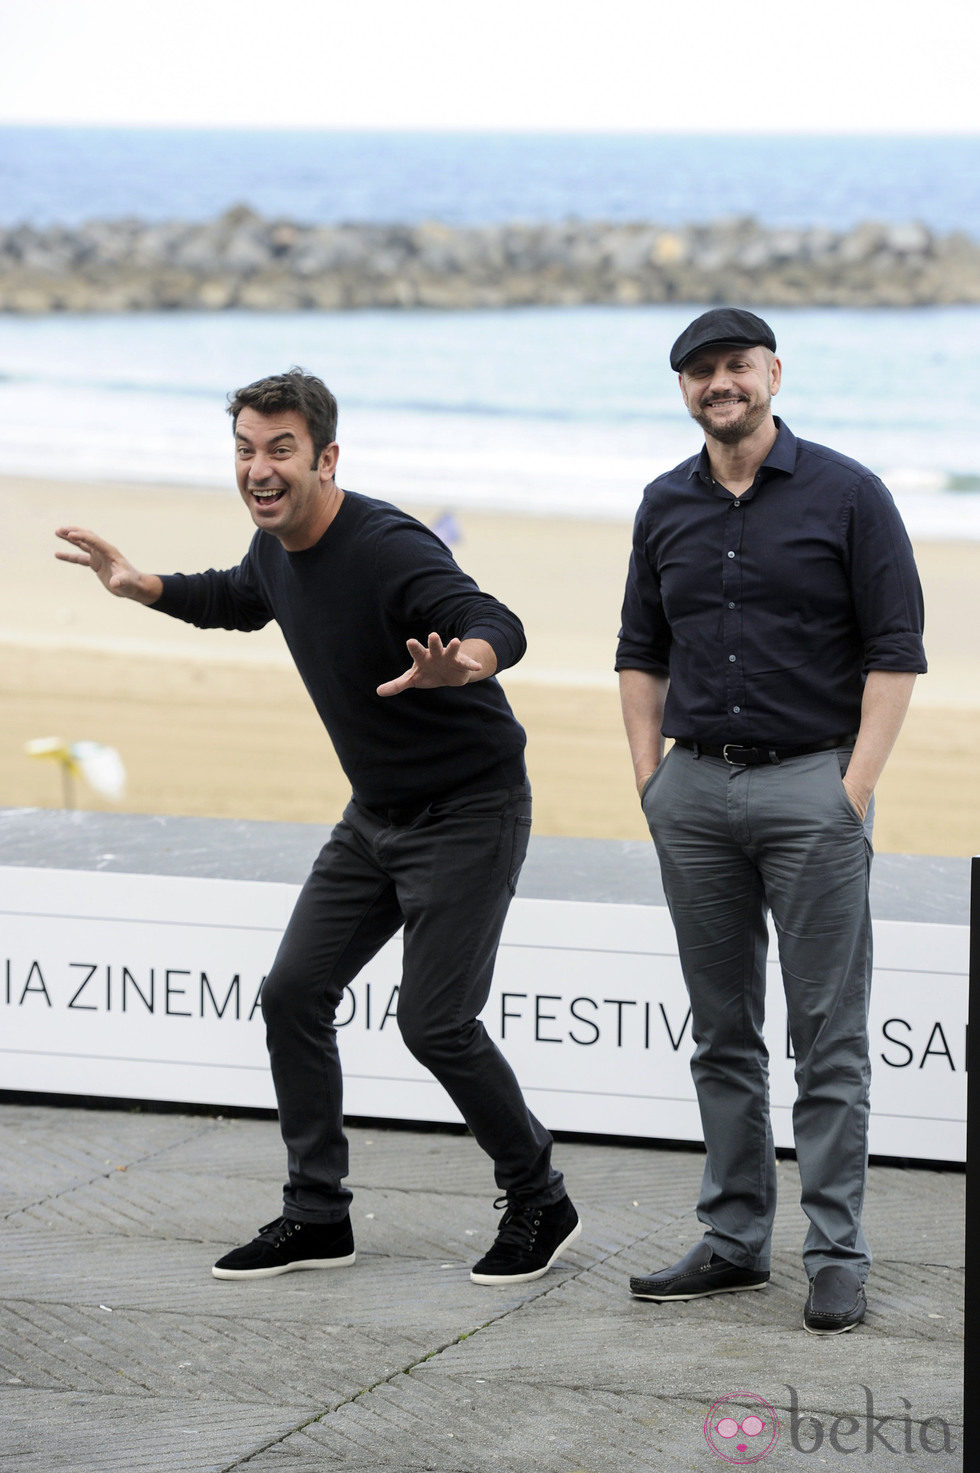 Arturo Valls y Juan José Campanella presentan 'Futbolín' en el Festival de San Sebastián 2013